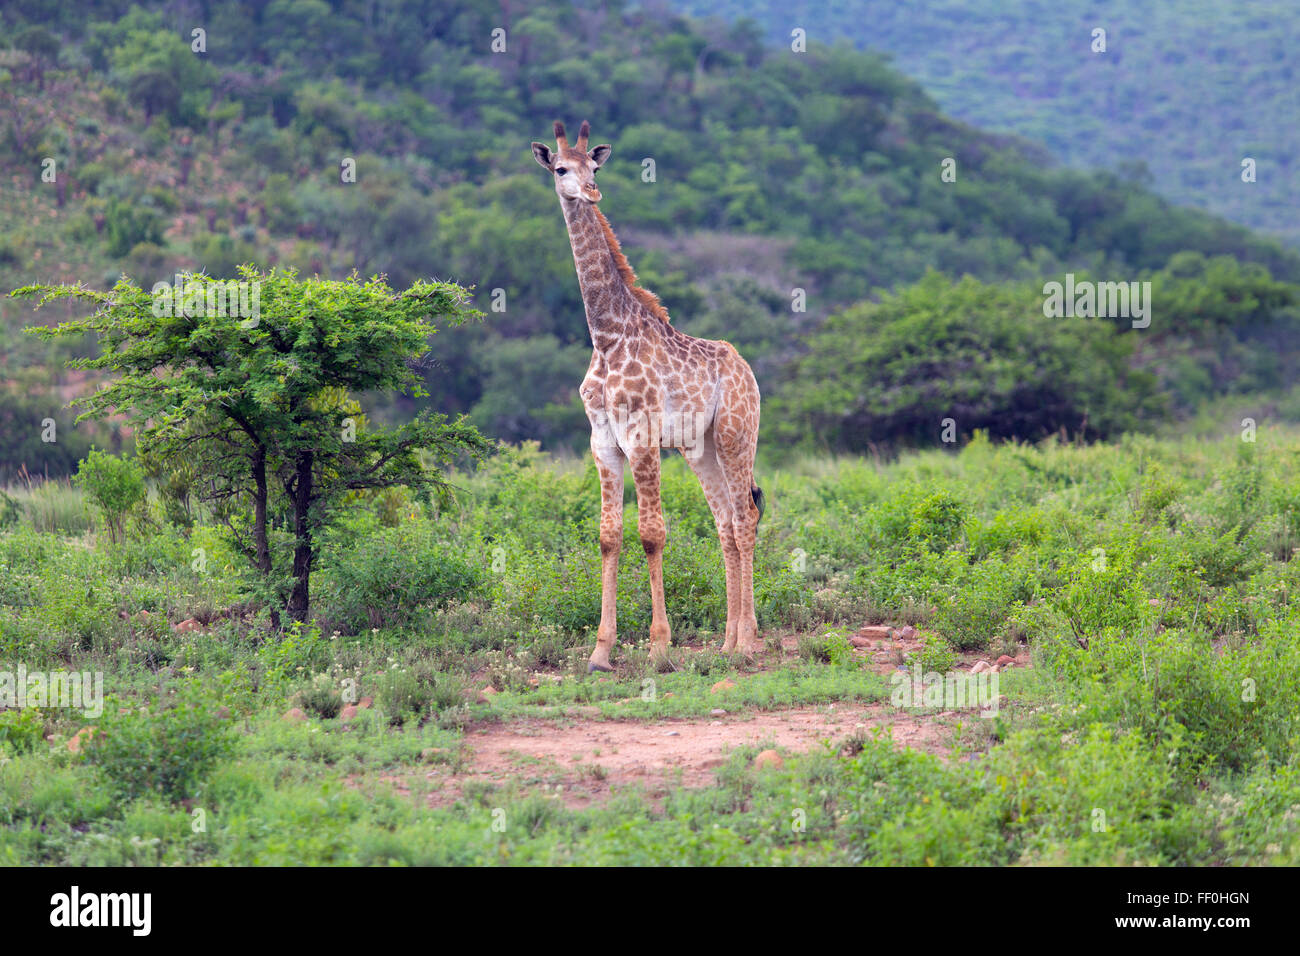 Cape Giraffe Giraffa camelopardalis feeding Stock Photo